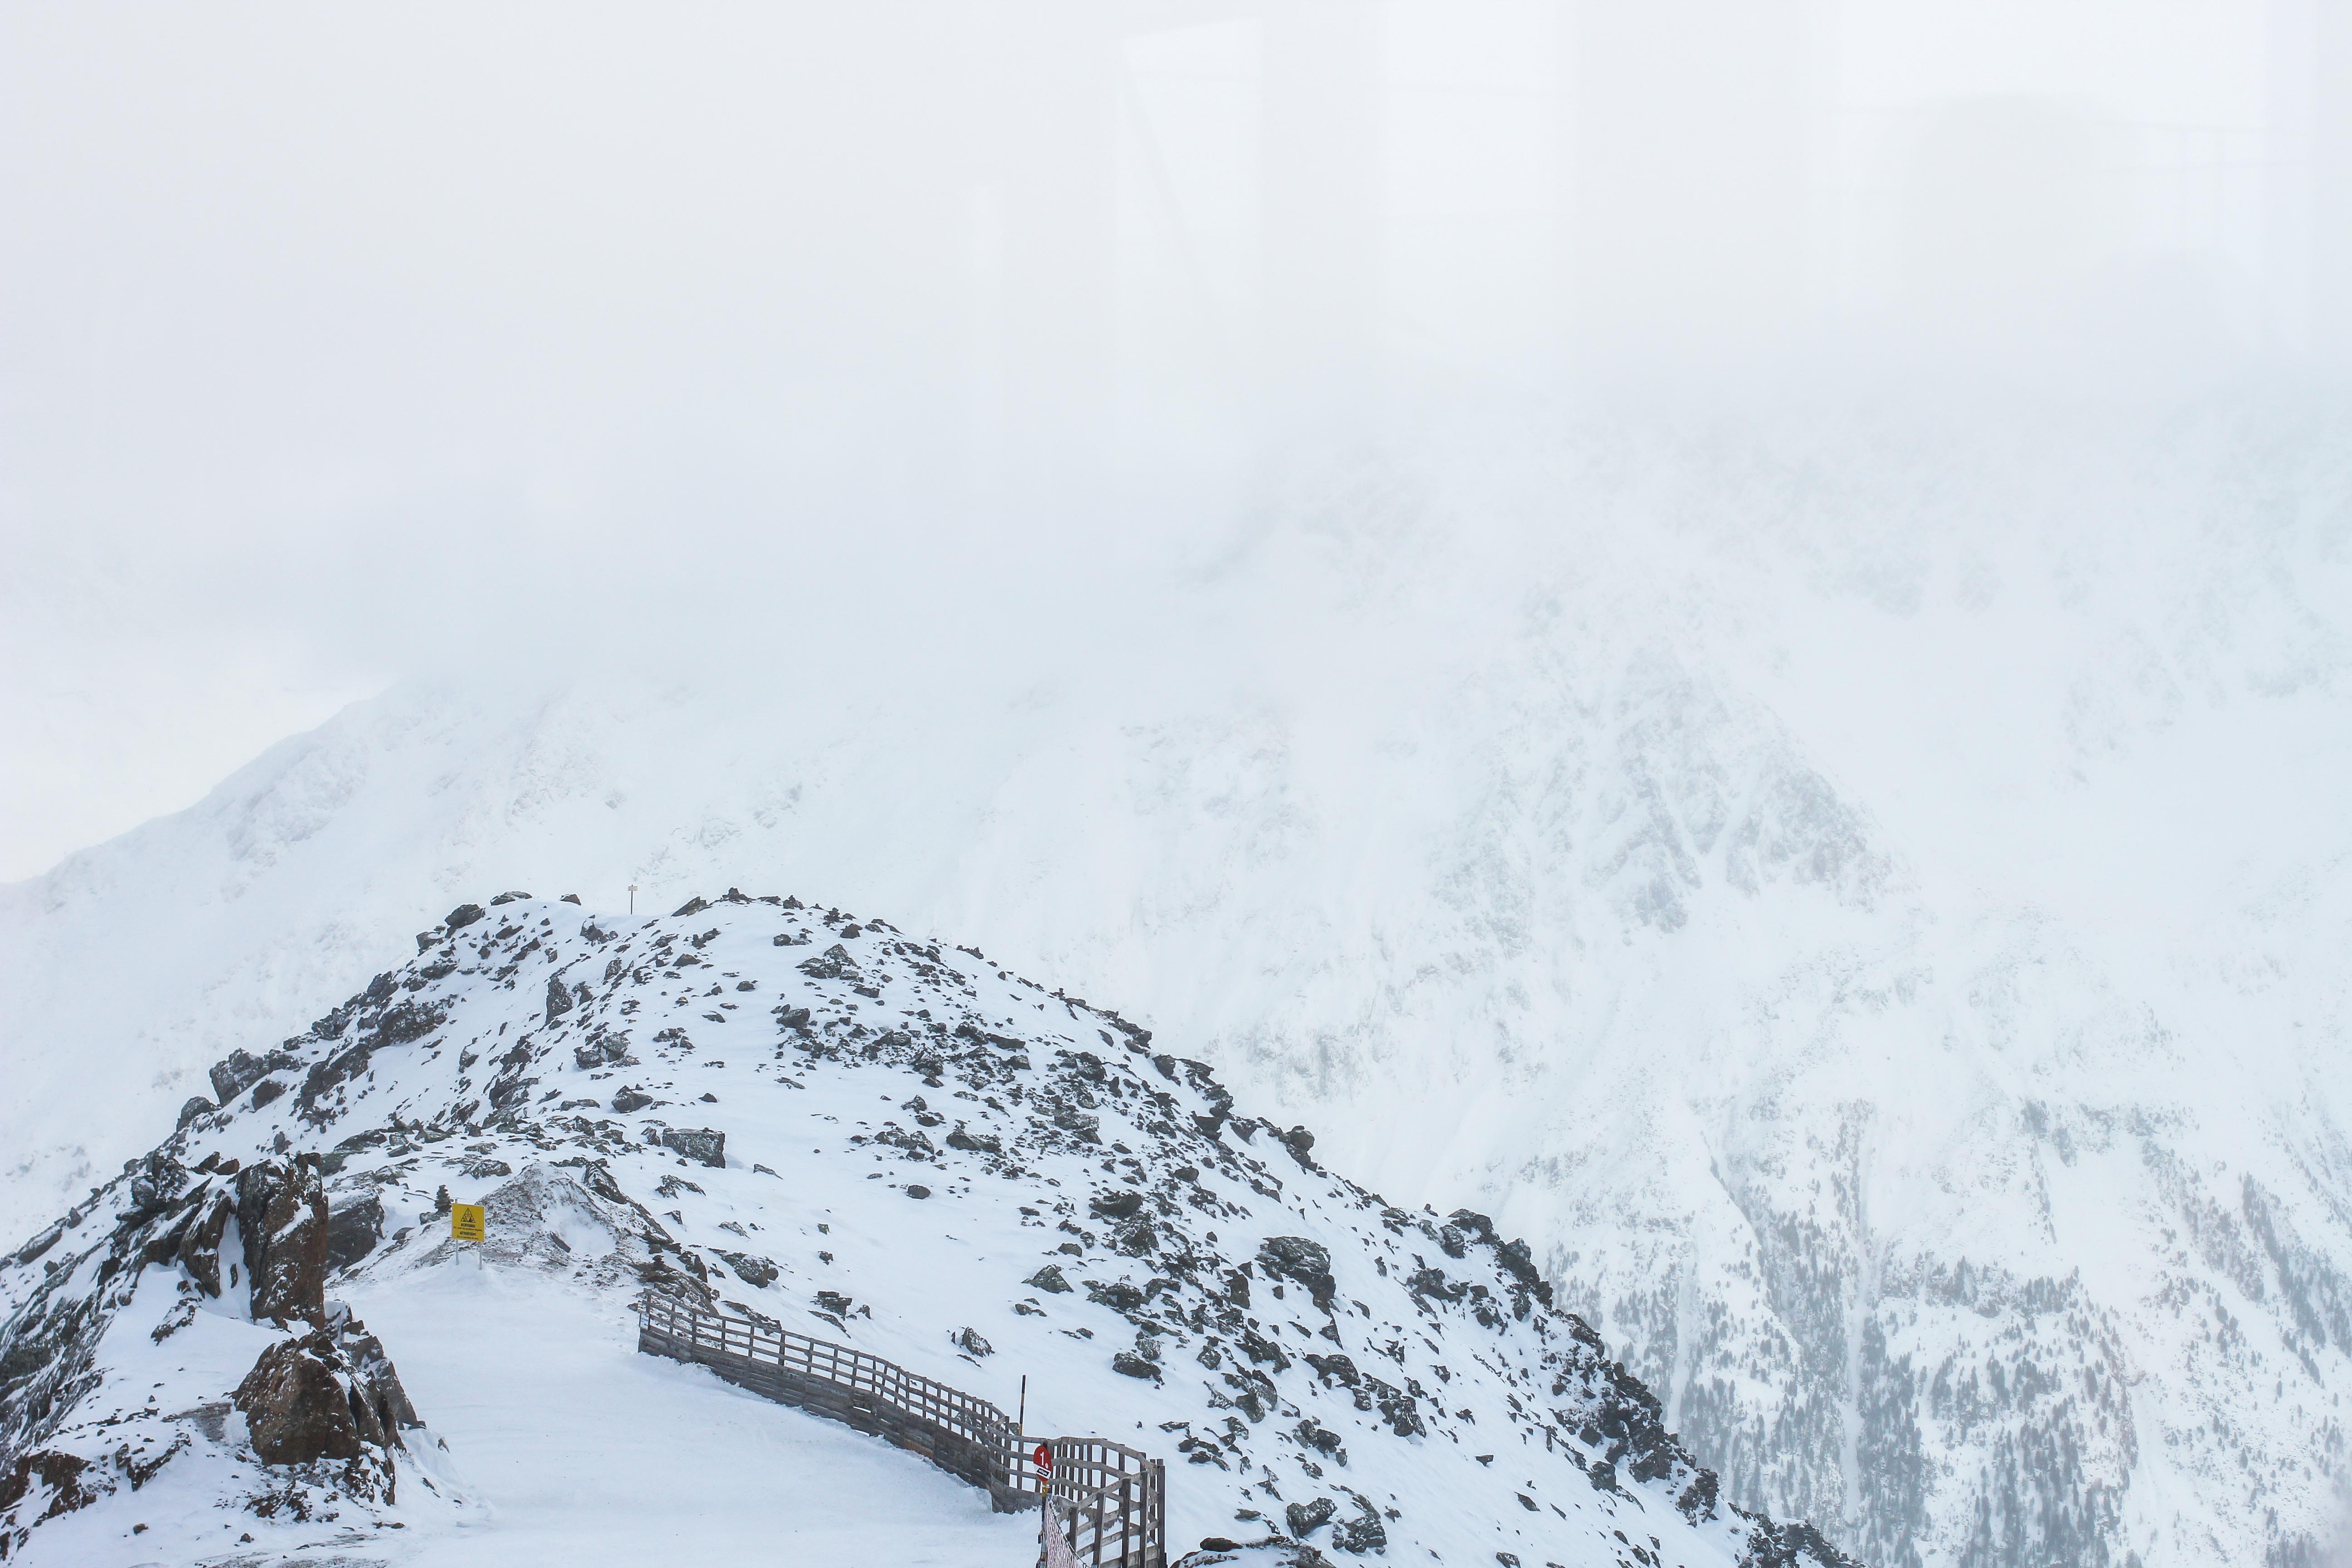 Gipfelaussicht Berge Schnee iceQ Sölden Tirol Österreich James Bond Location Spectre 3000m Gaislachkogl Reiseblog